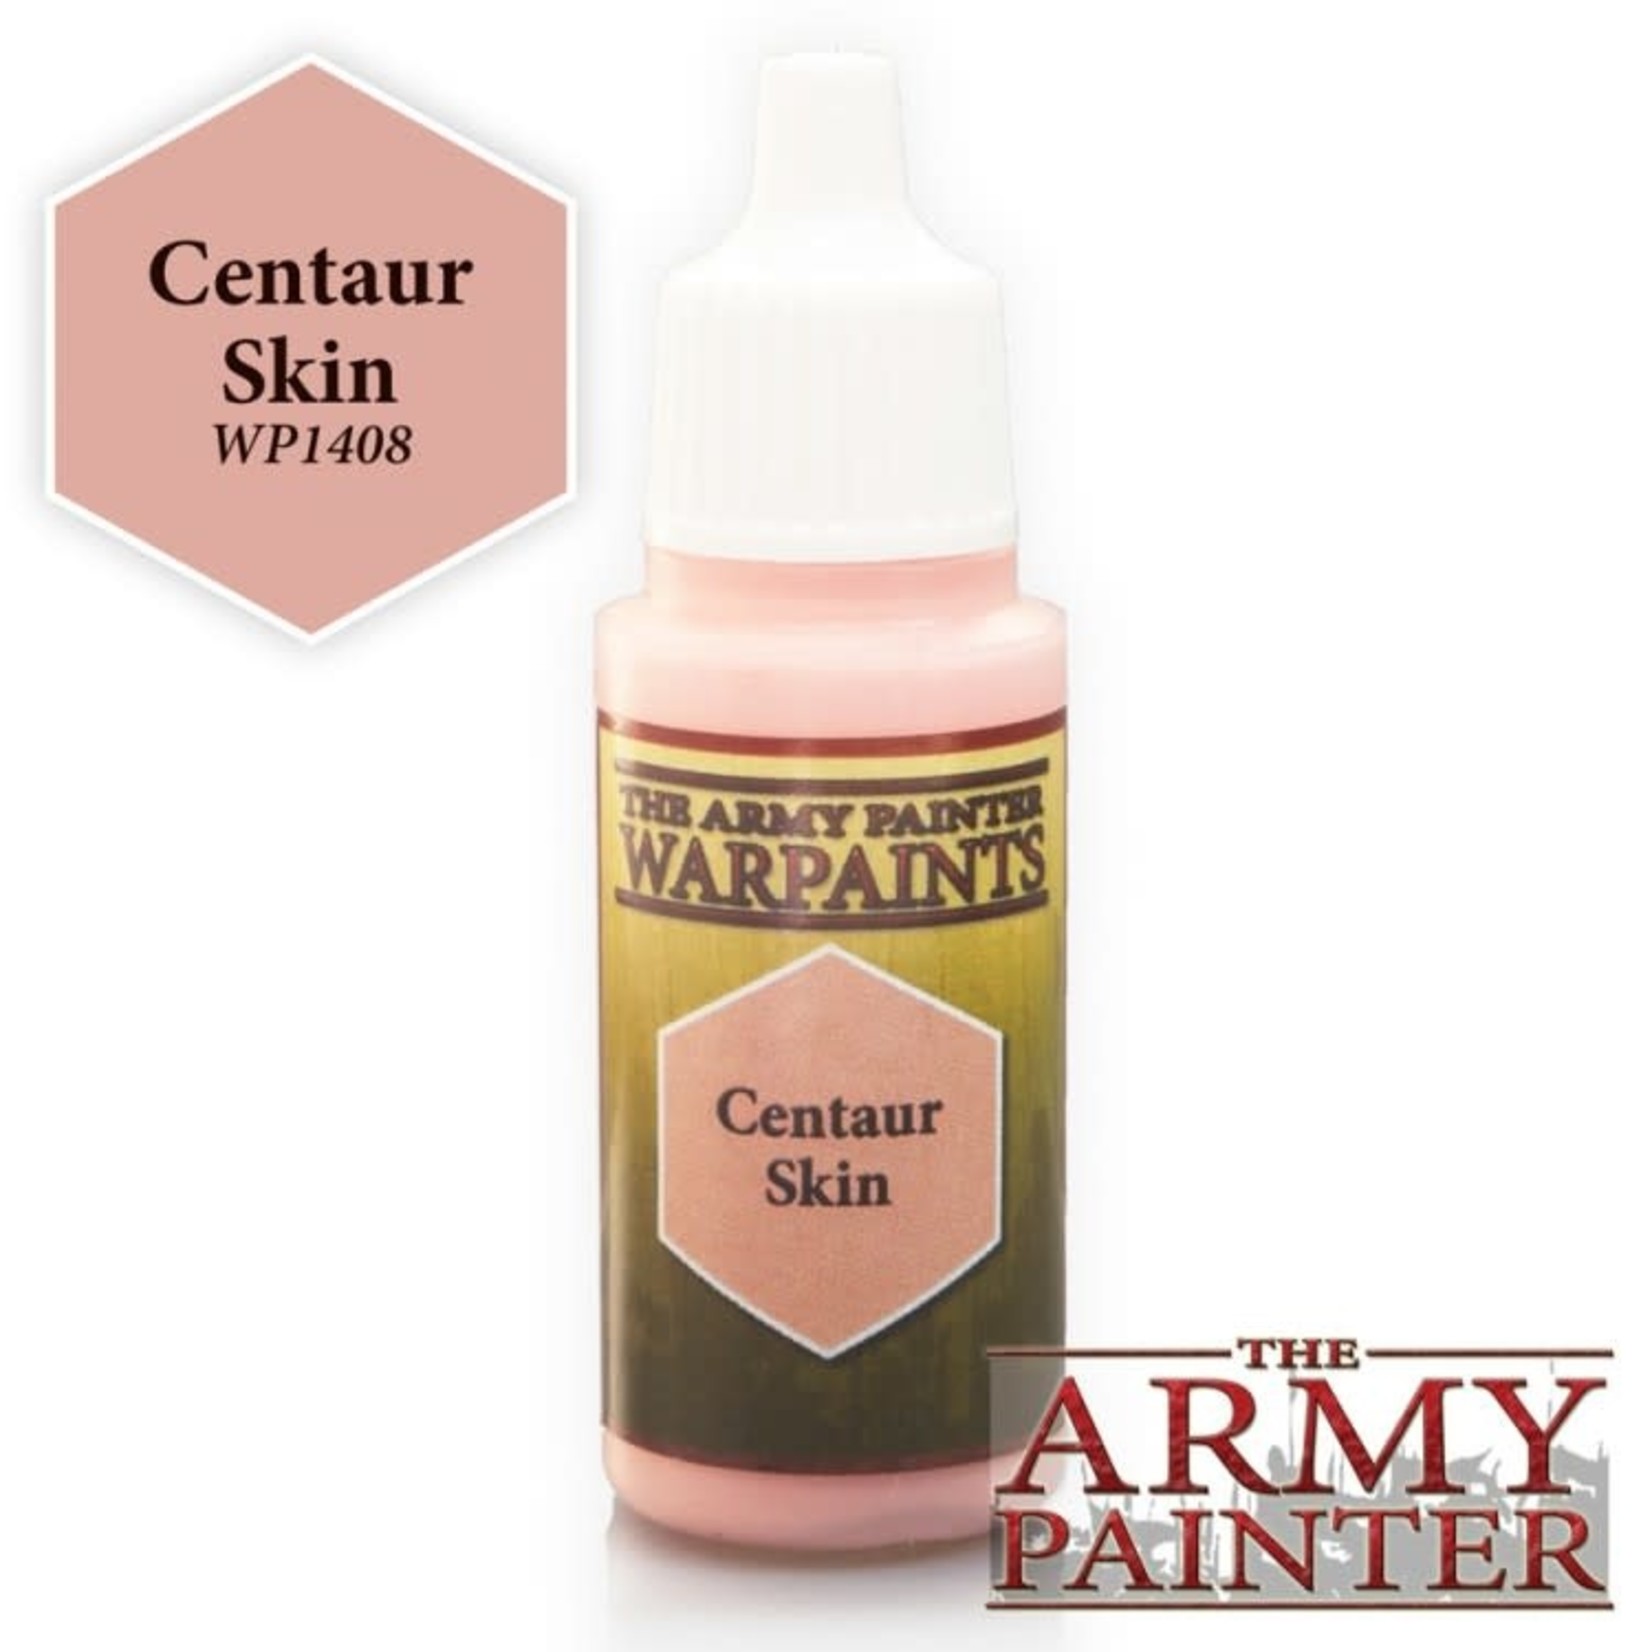 Army Painter Army Painter Warpaints Centaur Skin